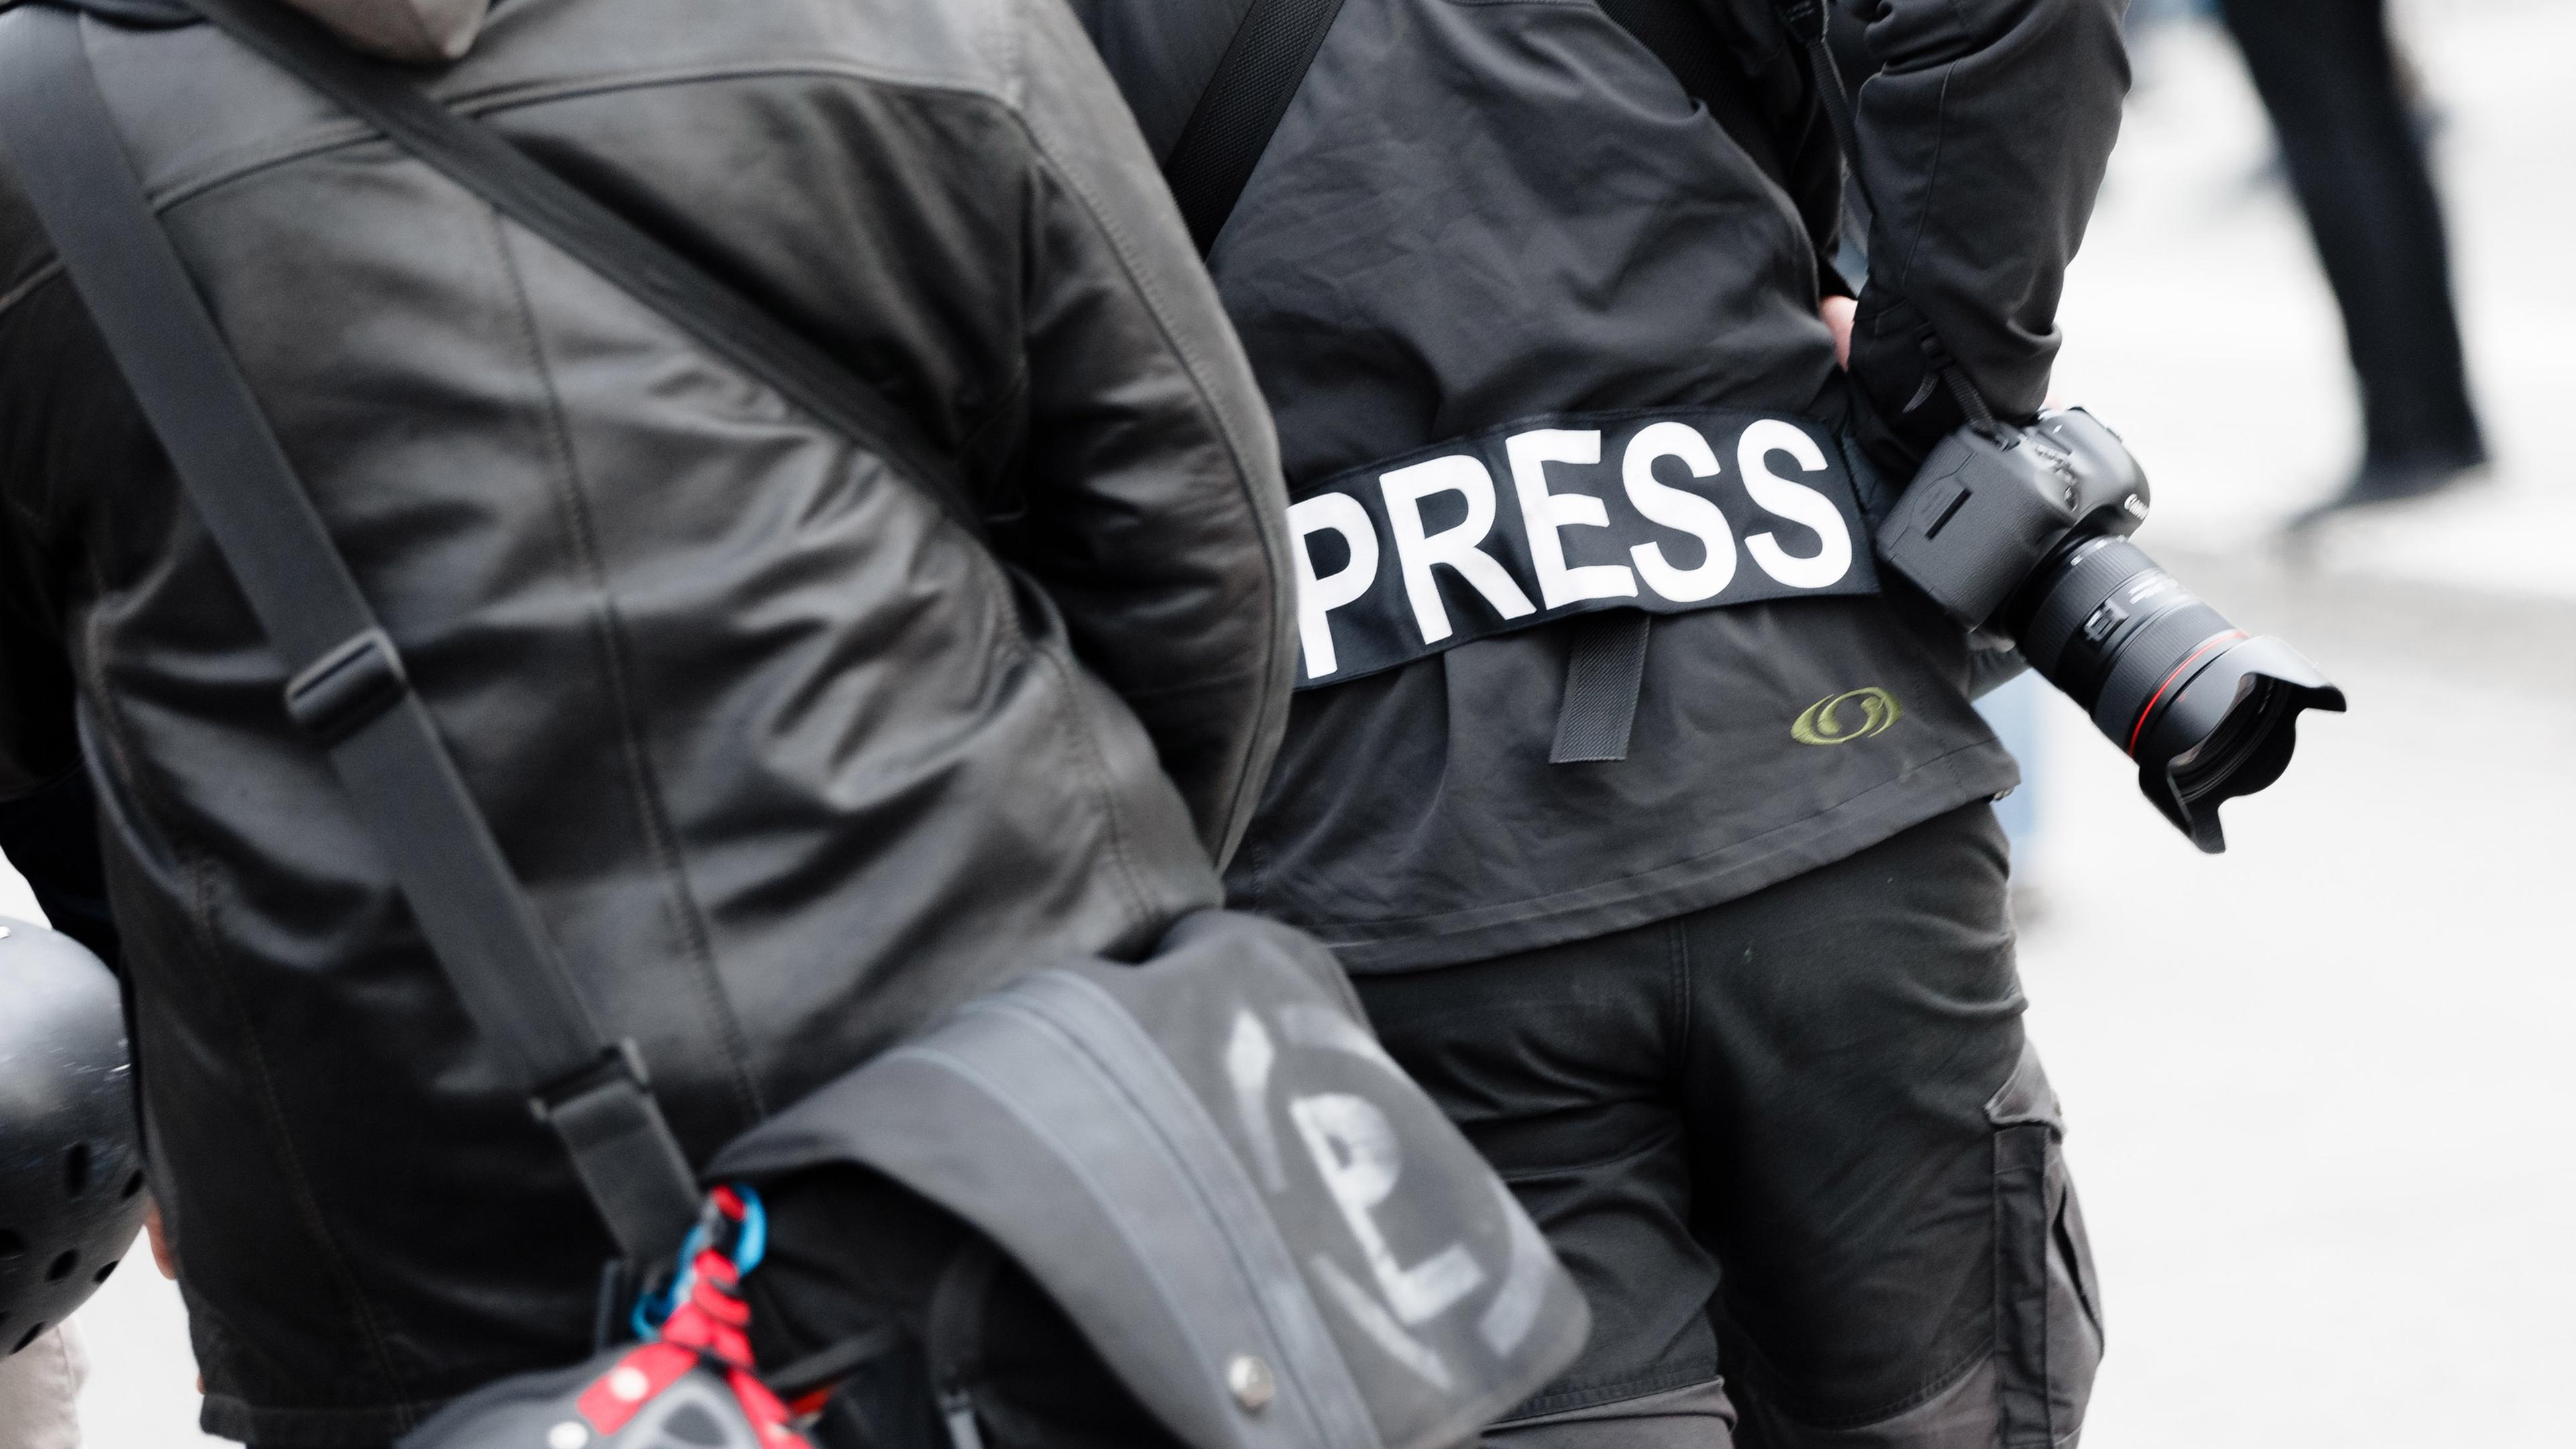 Hamburg: Ein Fotoreporter trägt auf einer Demonstration einen Aufnäher mit dem Text "PRESS" auf seiner Jacke, um sich gegenüber Polizei und Demonstranten als Journalist zu kennzeichnen.